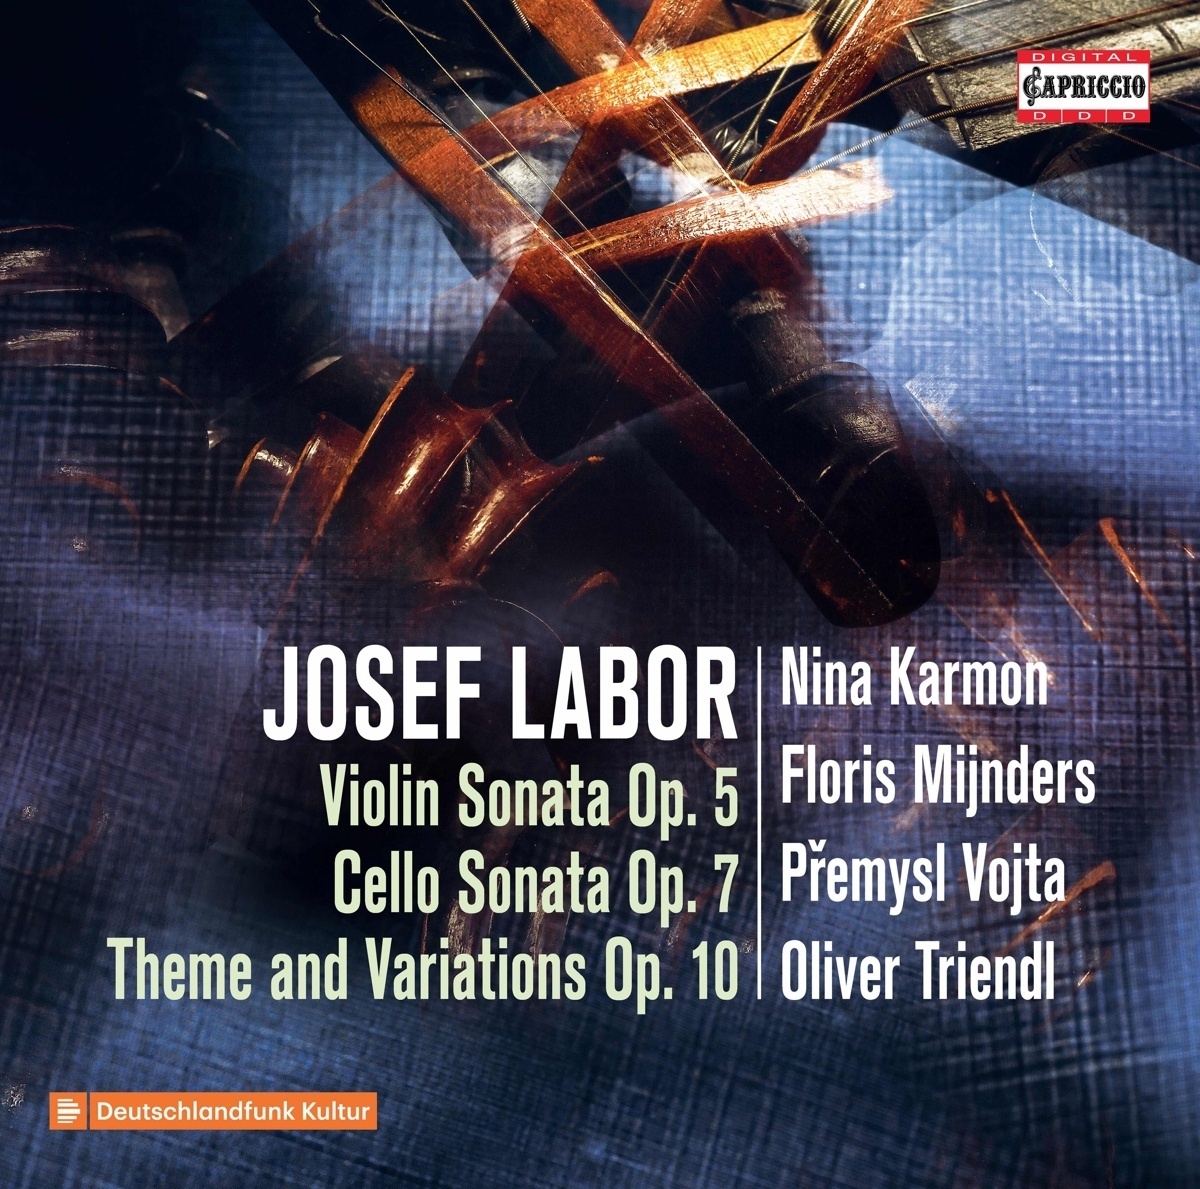 Sonate Für Violoncello Und Klavier 1 - Nina Karmon  Floris Mijnders  P. Vojta  O. Triendl. (CD)